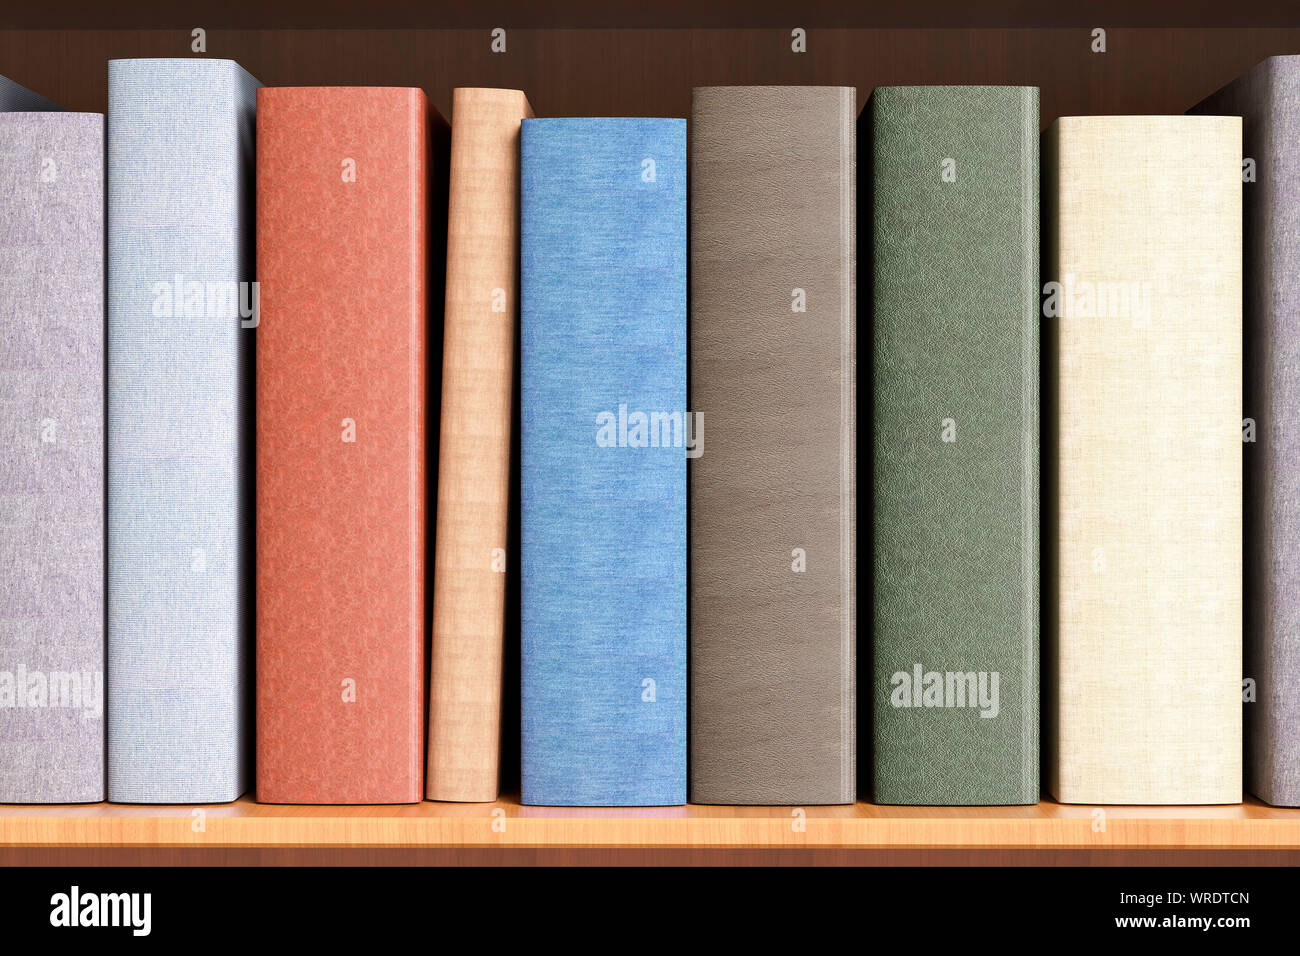 Paperback books avec une colonne vide sur une étagère close up Banque D'Images